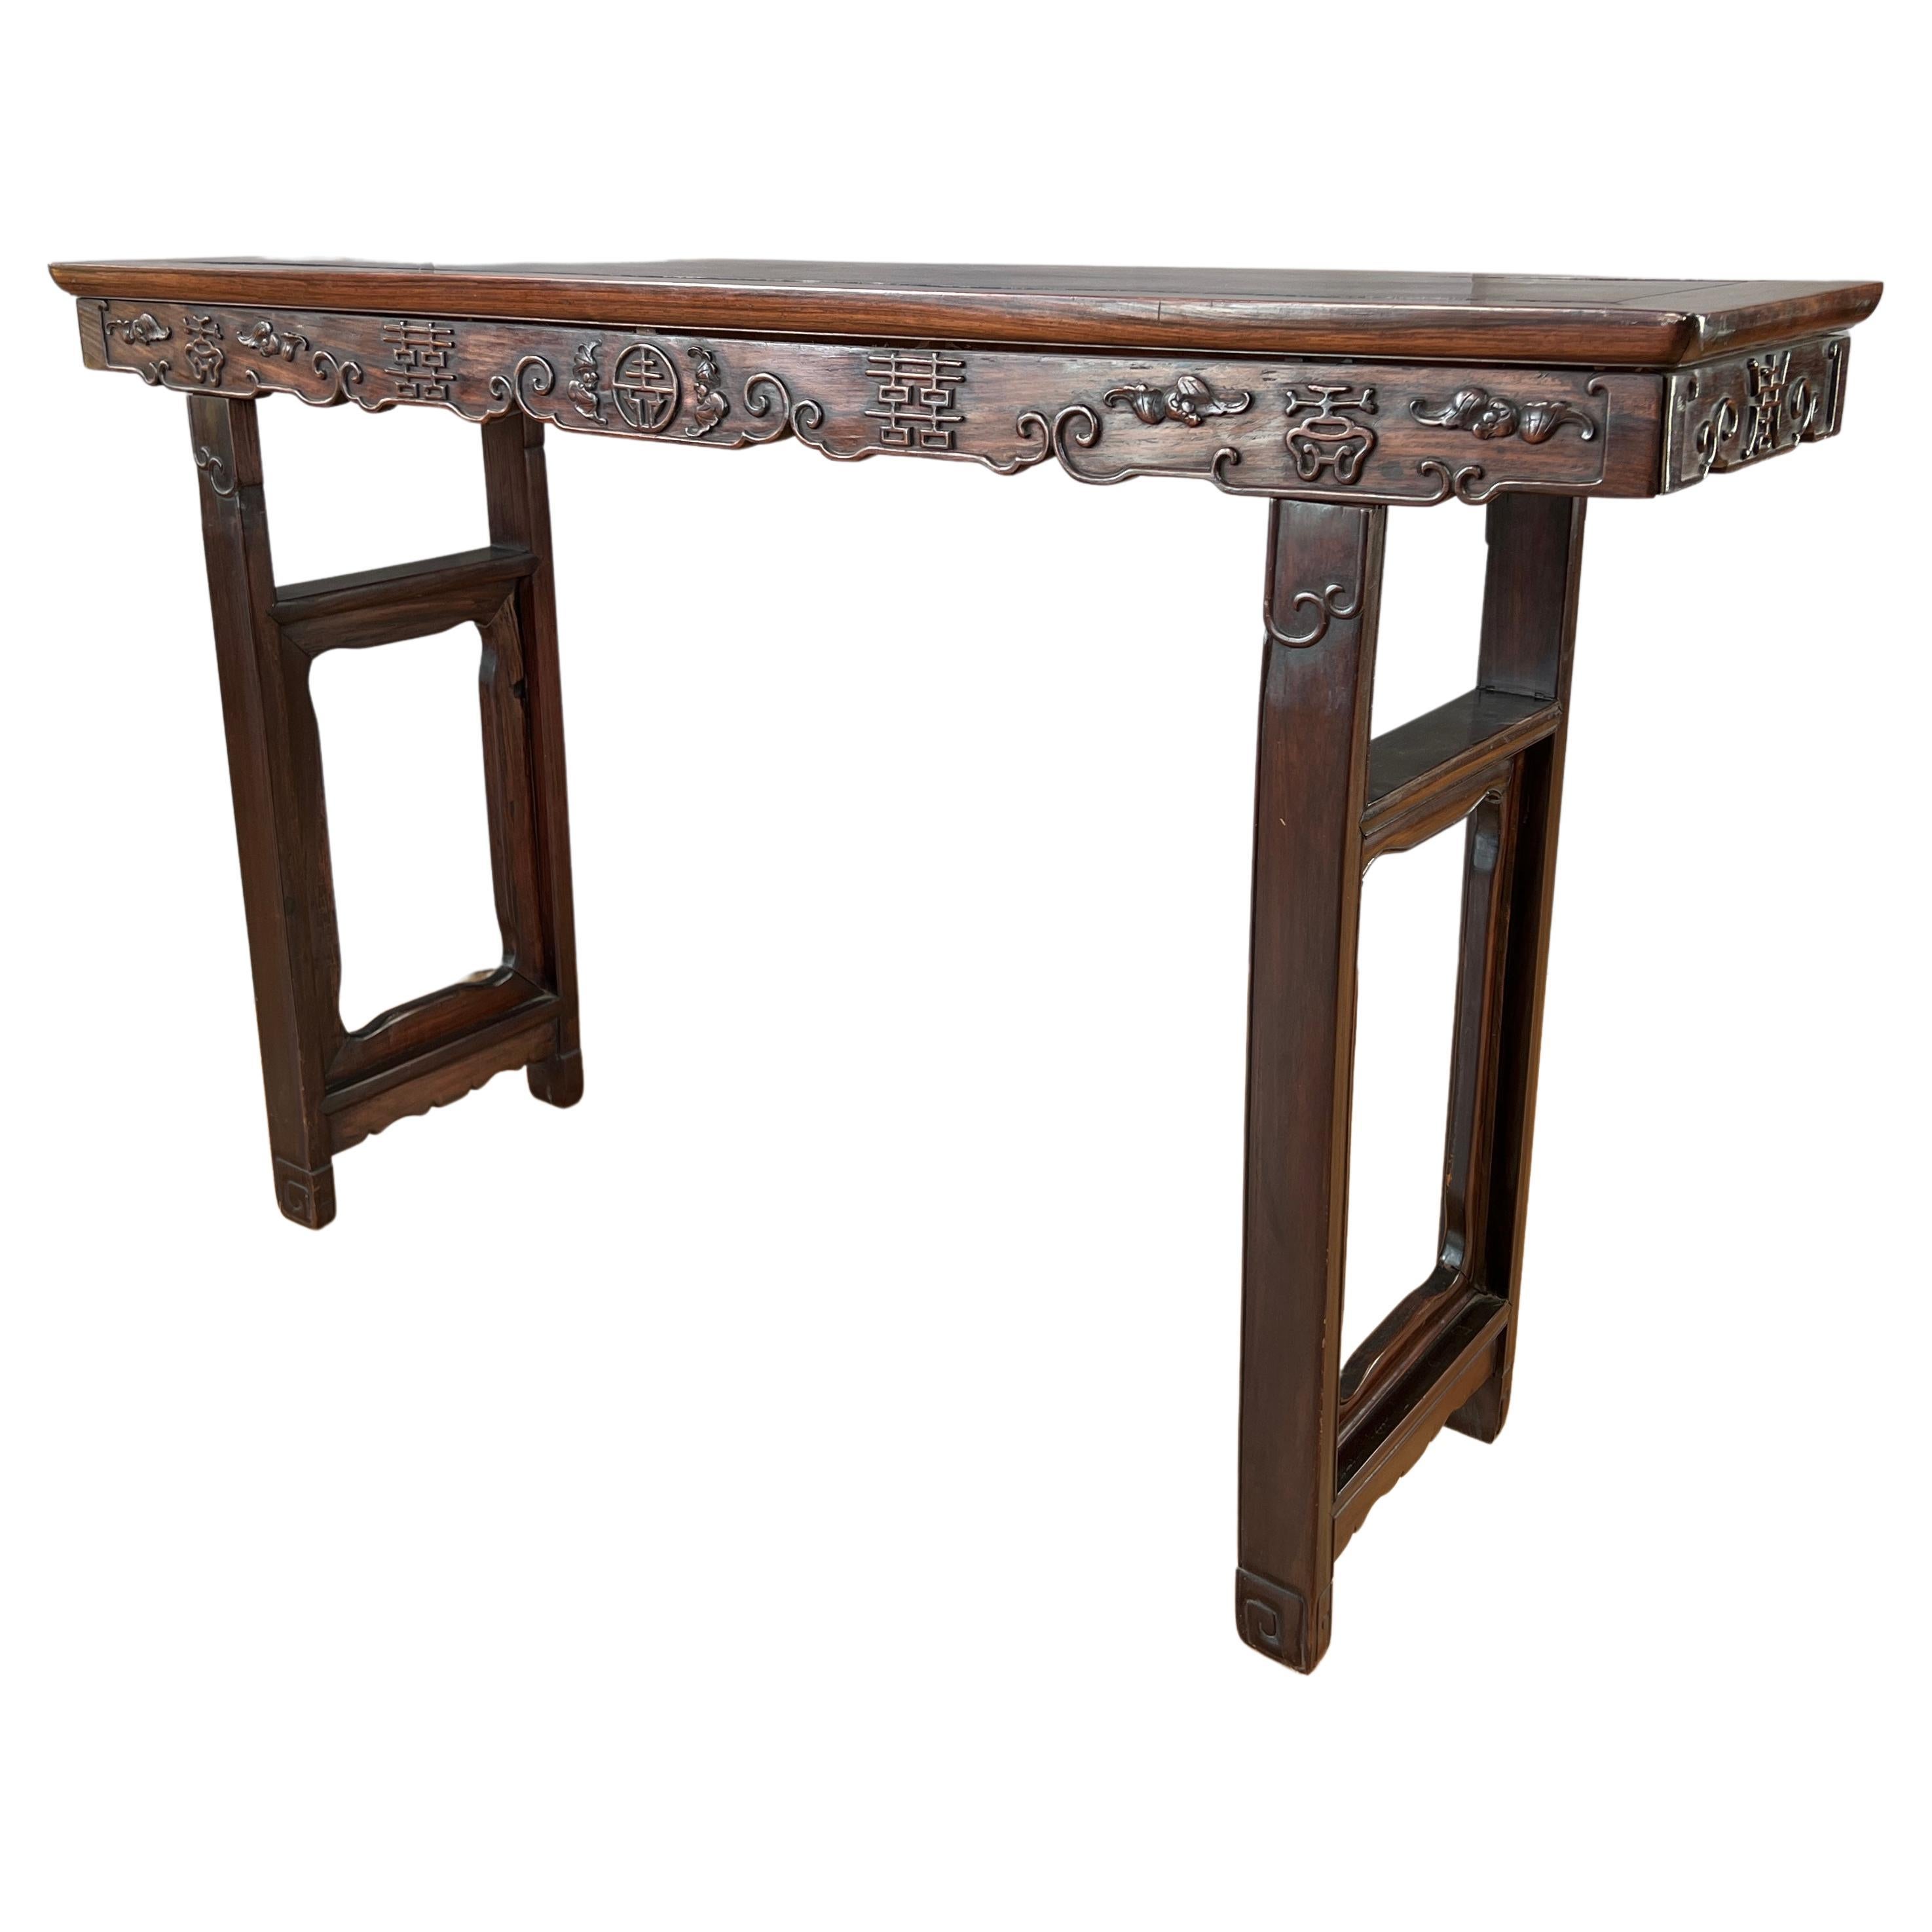 Table d'authentification en bois de zitano de l'époque de la dynastie chinoise Qing du 19ème siècle